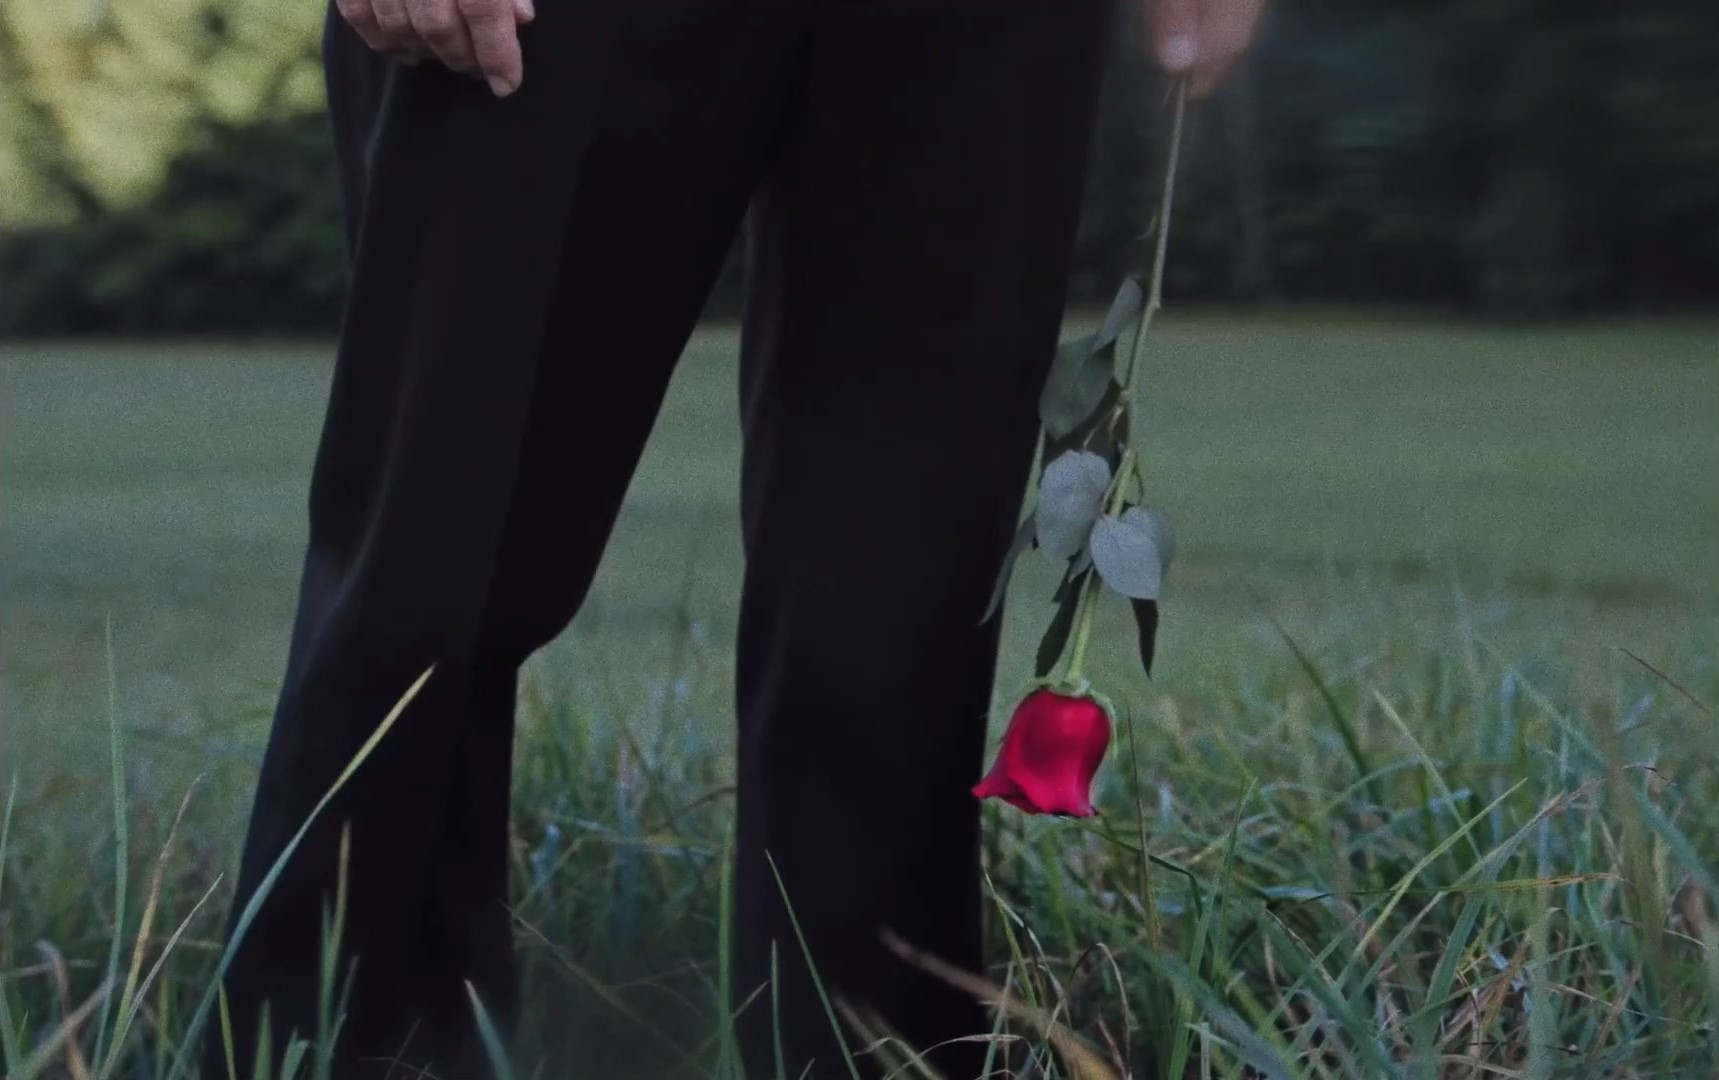 Cena do filme Higiene Social exibe as pernas de um homem parado em um campo com grama curta. Vemos calças pretas e uma rosa pendendo da mão esquerda do homem.